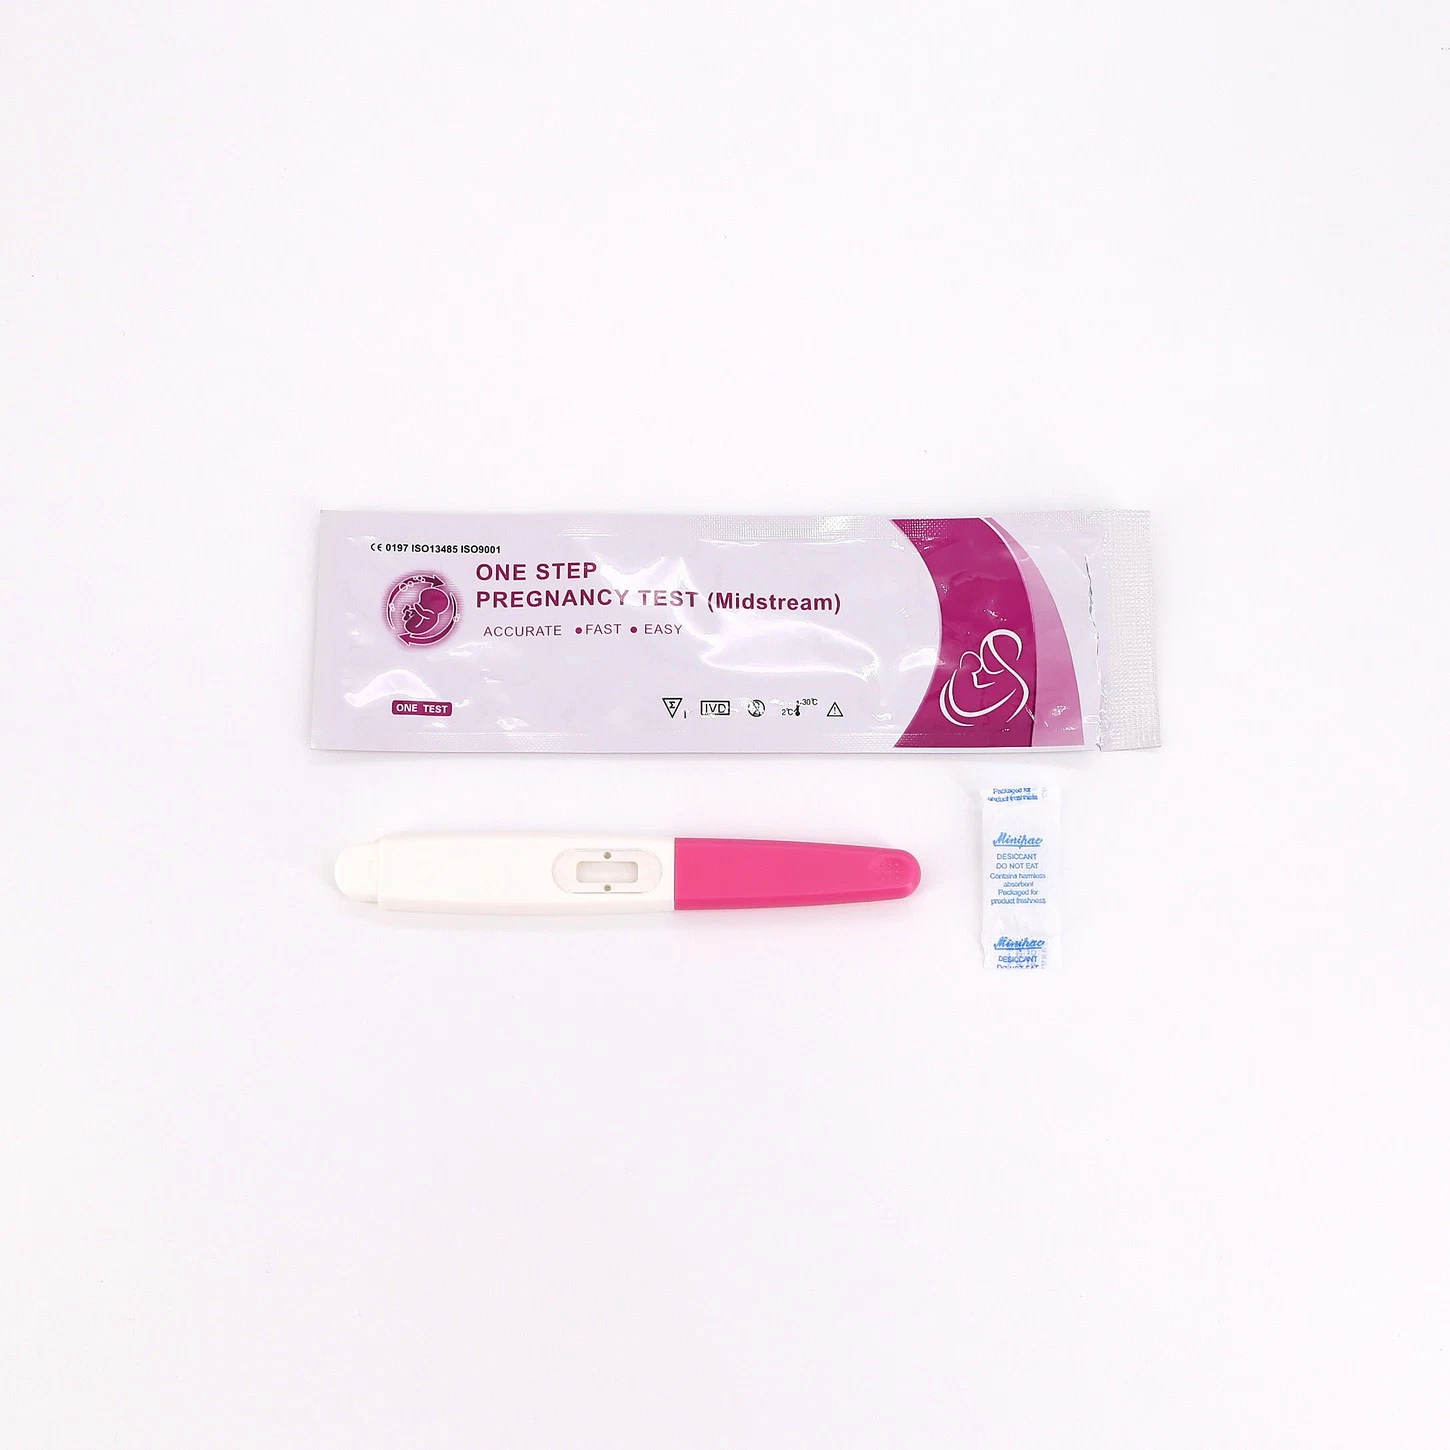 Простота использования Быстрая точная 5 минут Читать результаты в моче/сыворотке ХГЧ беременность Быстрое тестирование типа пера Midstream для личной гигиены